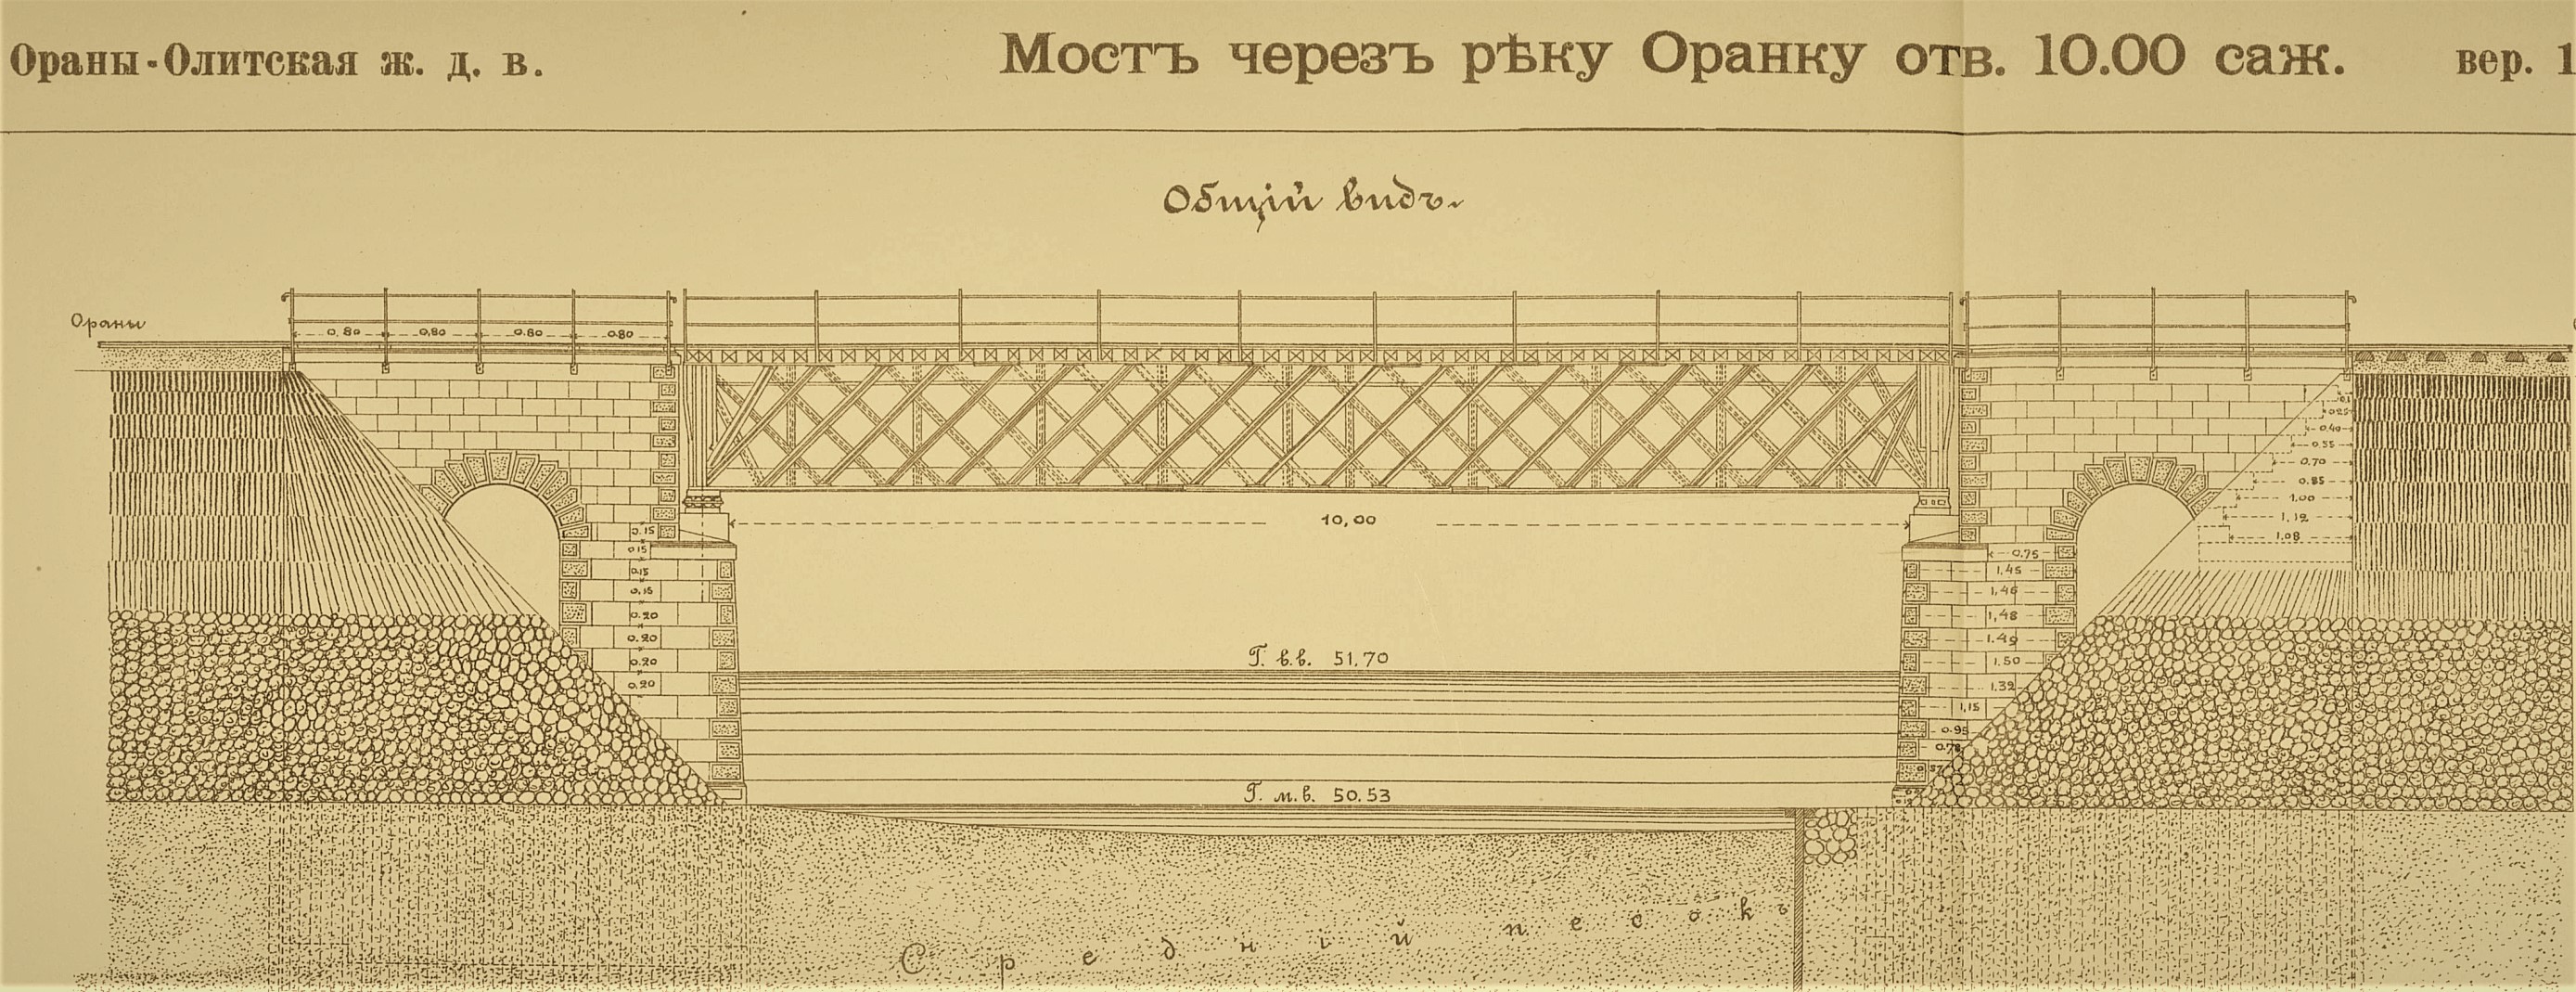 Oranka (Varene) tiltas/bridge